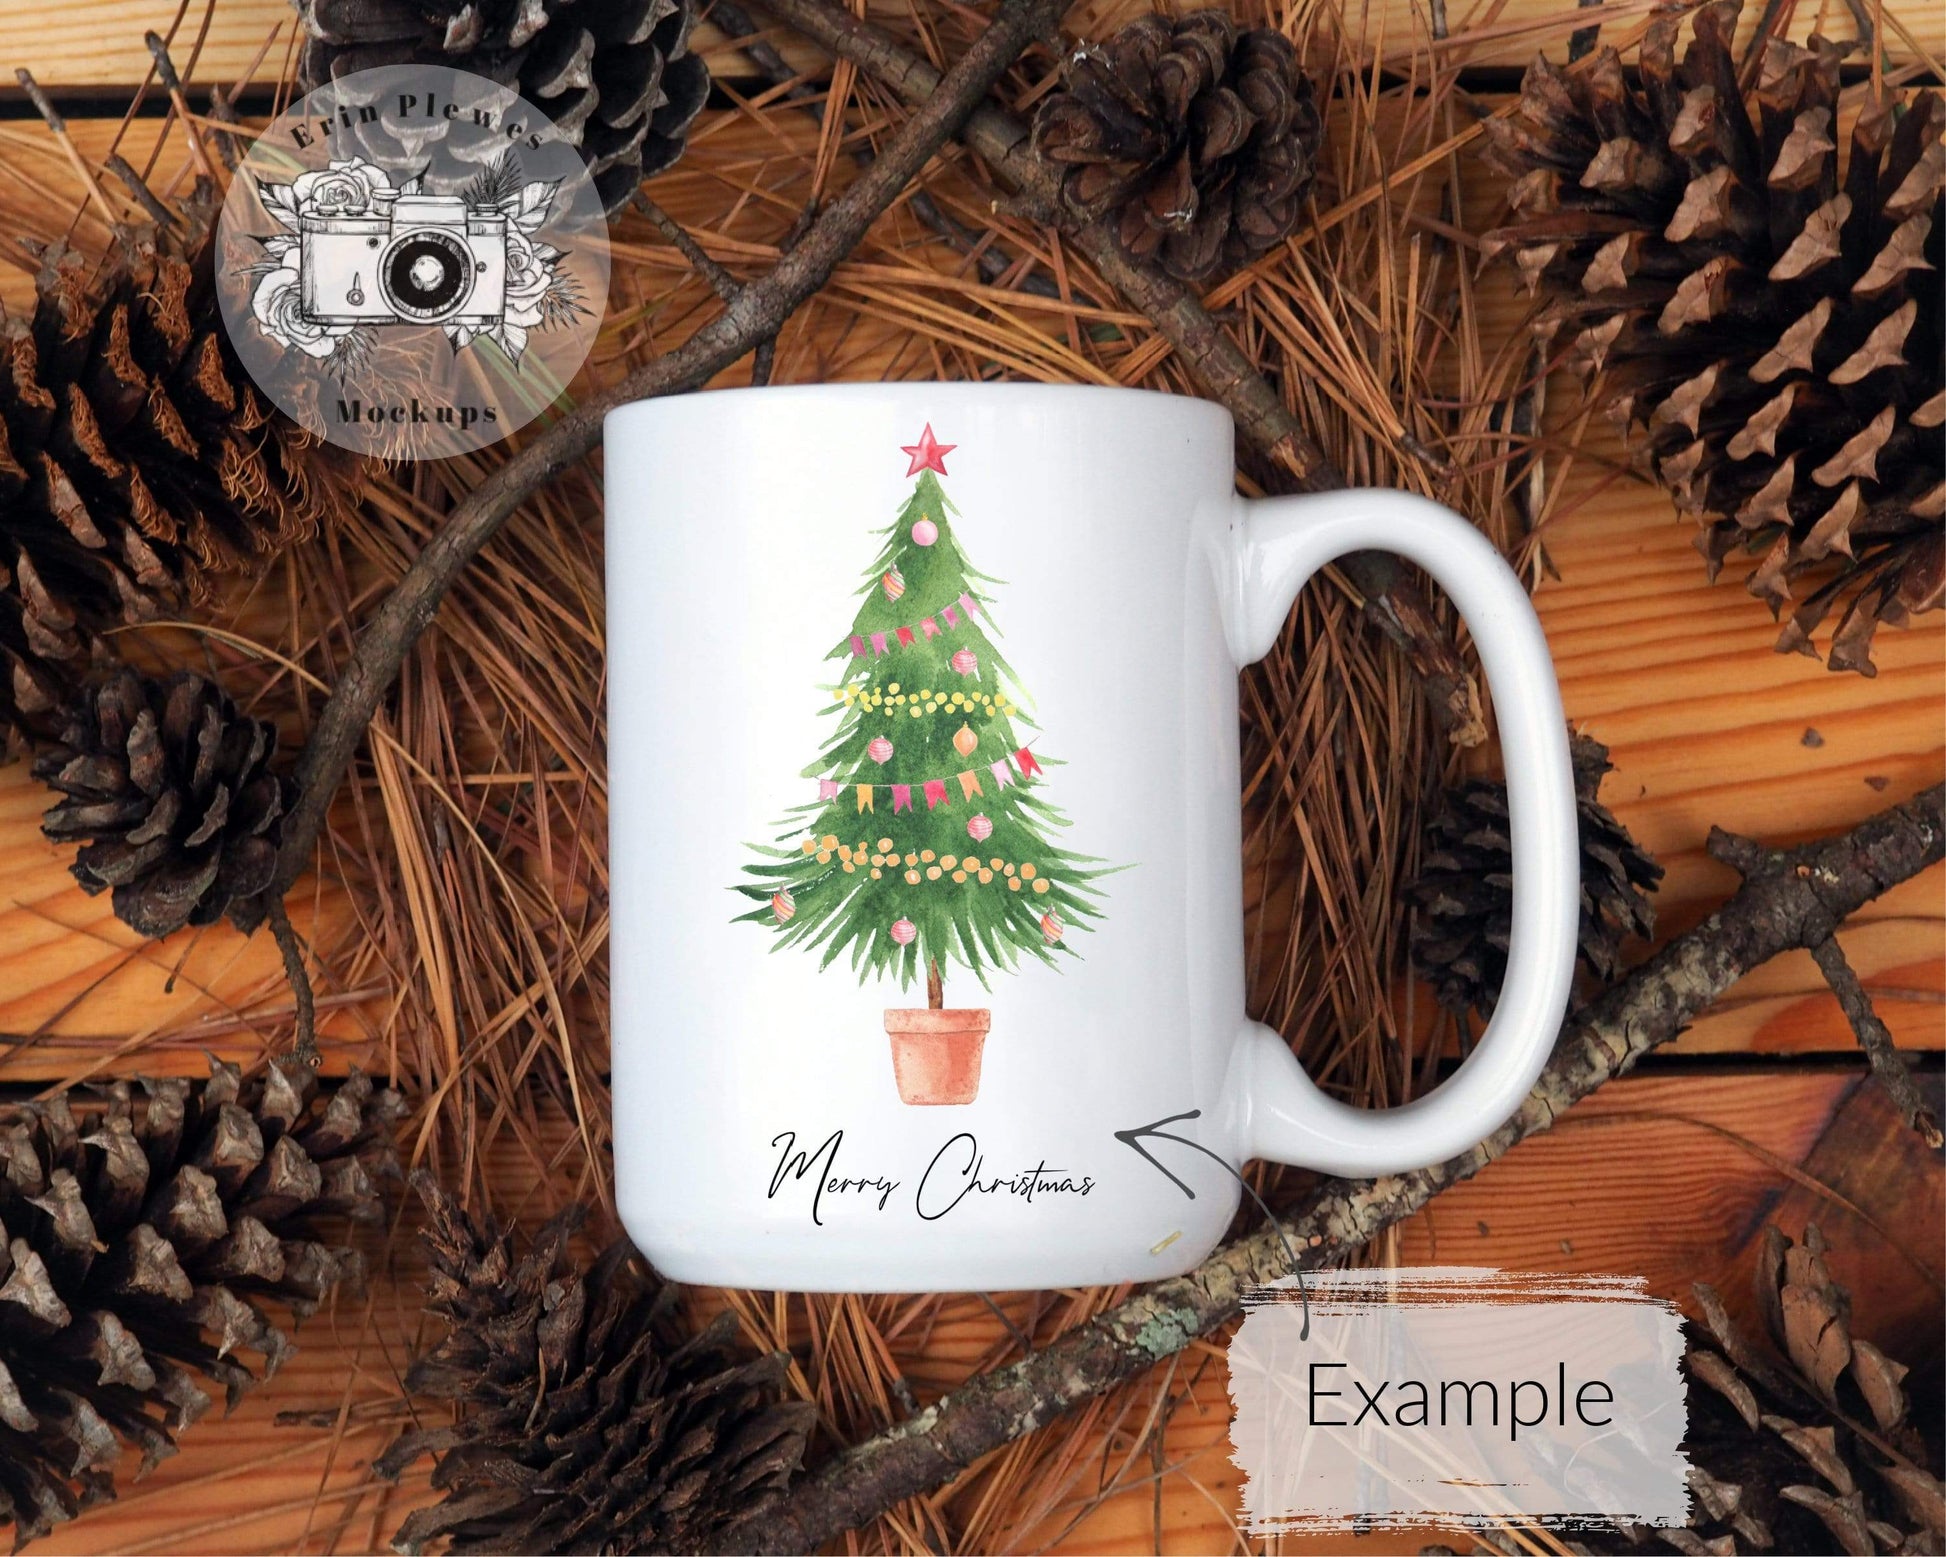 Erin Plewes Mockups Mug Mockup Bundle in Nature, White mug mockup bundle for Christmas stock photography, Jpeg Instant Digital Download